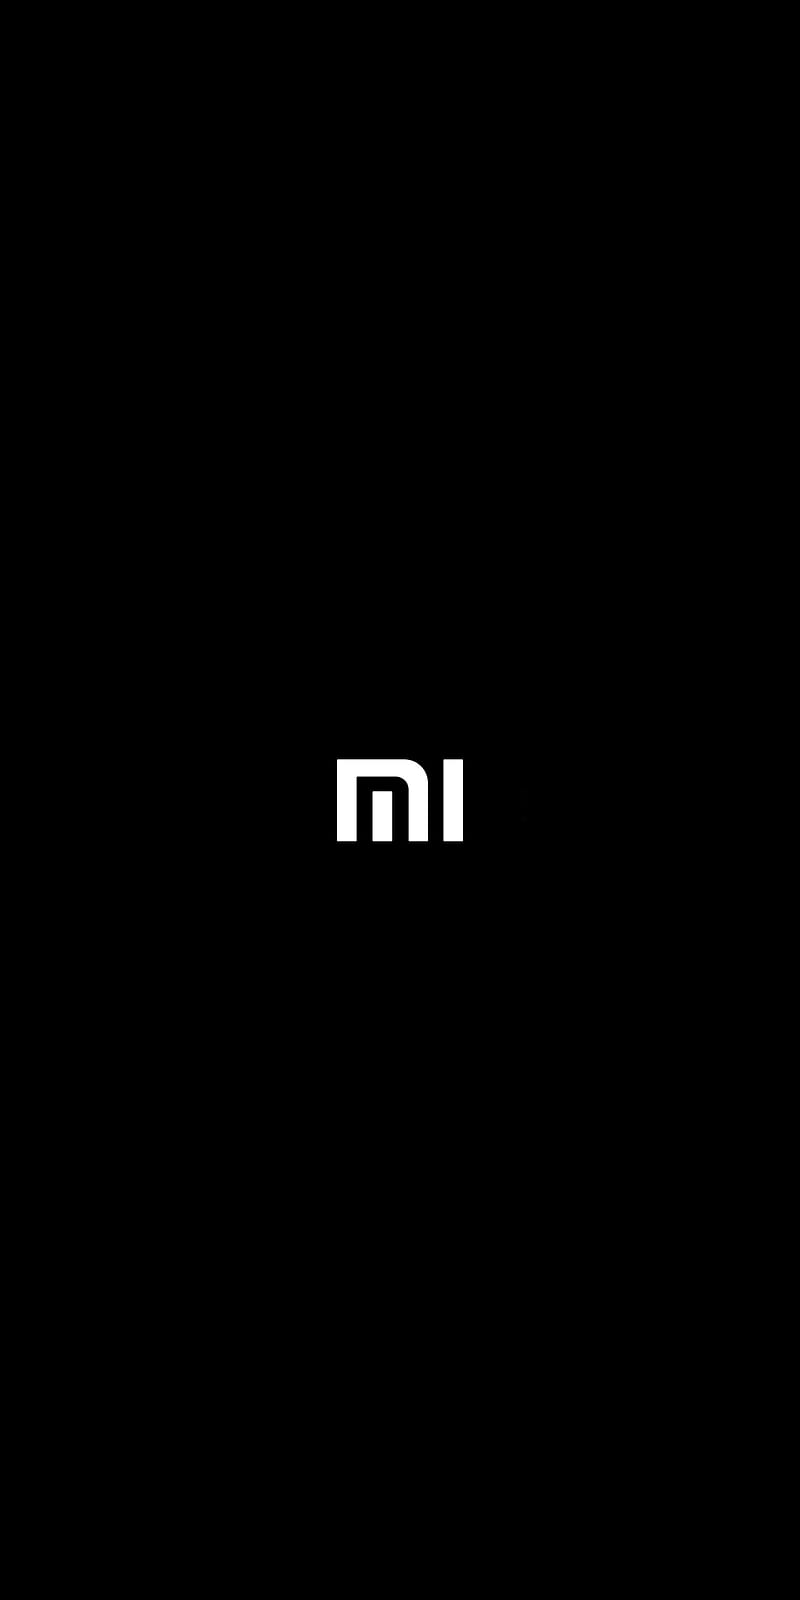 Màu sắc tối giản và đầy tinh tế, logo Xiaomi trên nền đen sẽ khiến bạn rung động. Hãy xem hình ảnh liên quan để khám phá thêm về những thiết kế sáng tạo và công nghệ tiên tiến của Xiaomi.